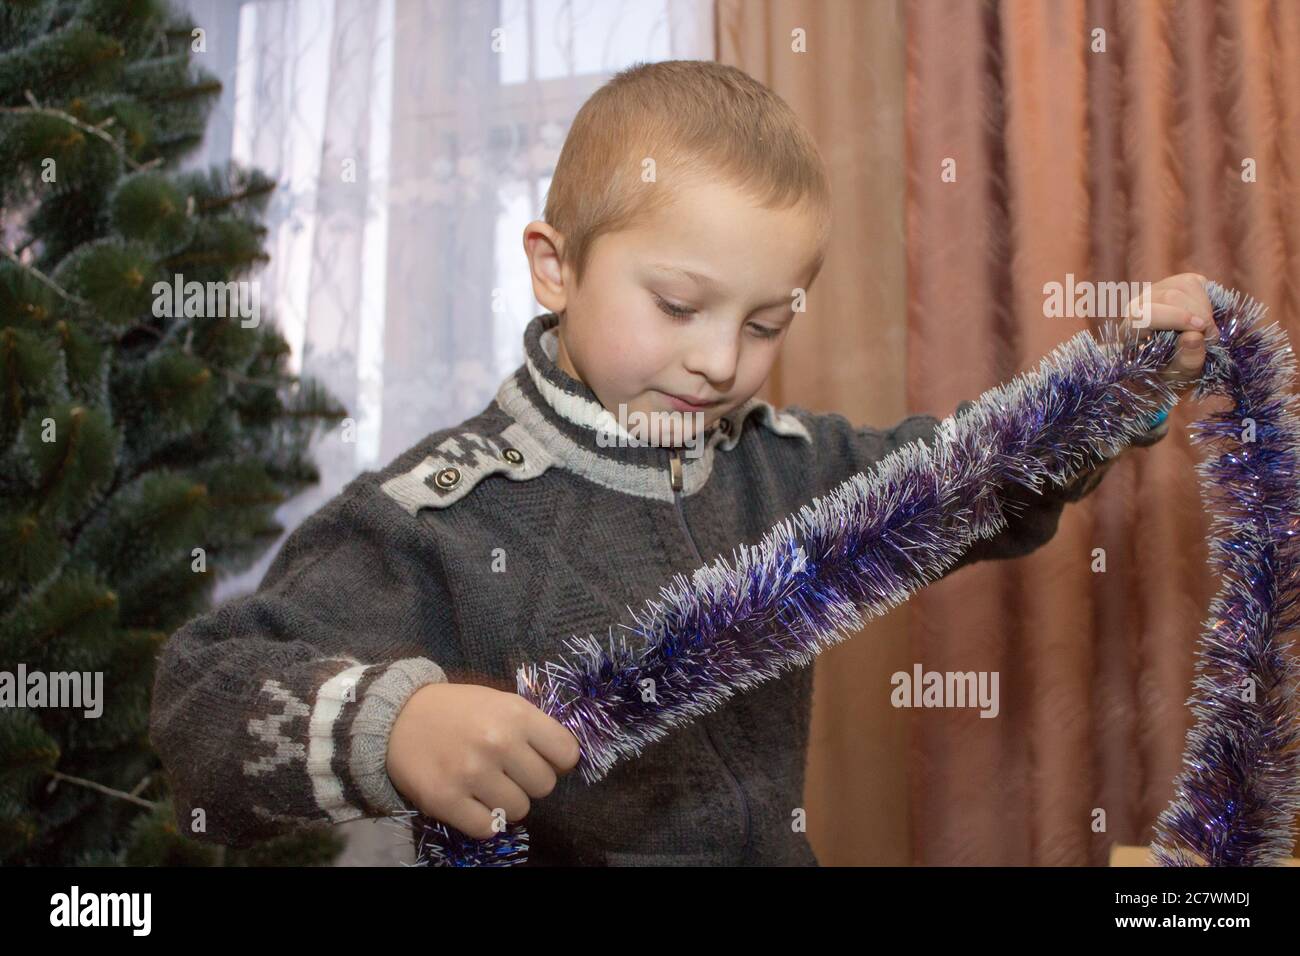 Überrascht Junge hält Lametta, um einen Weihnachtsbaum zu schmücken Stockfoto